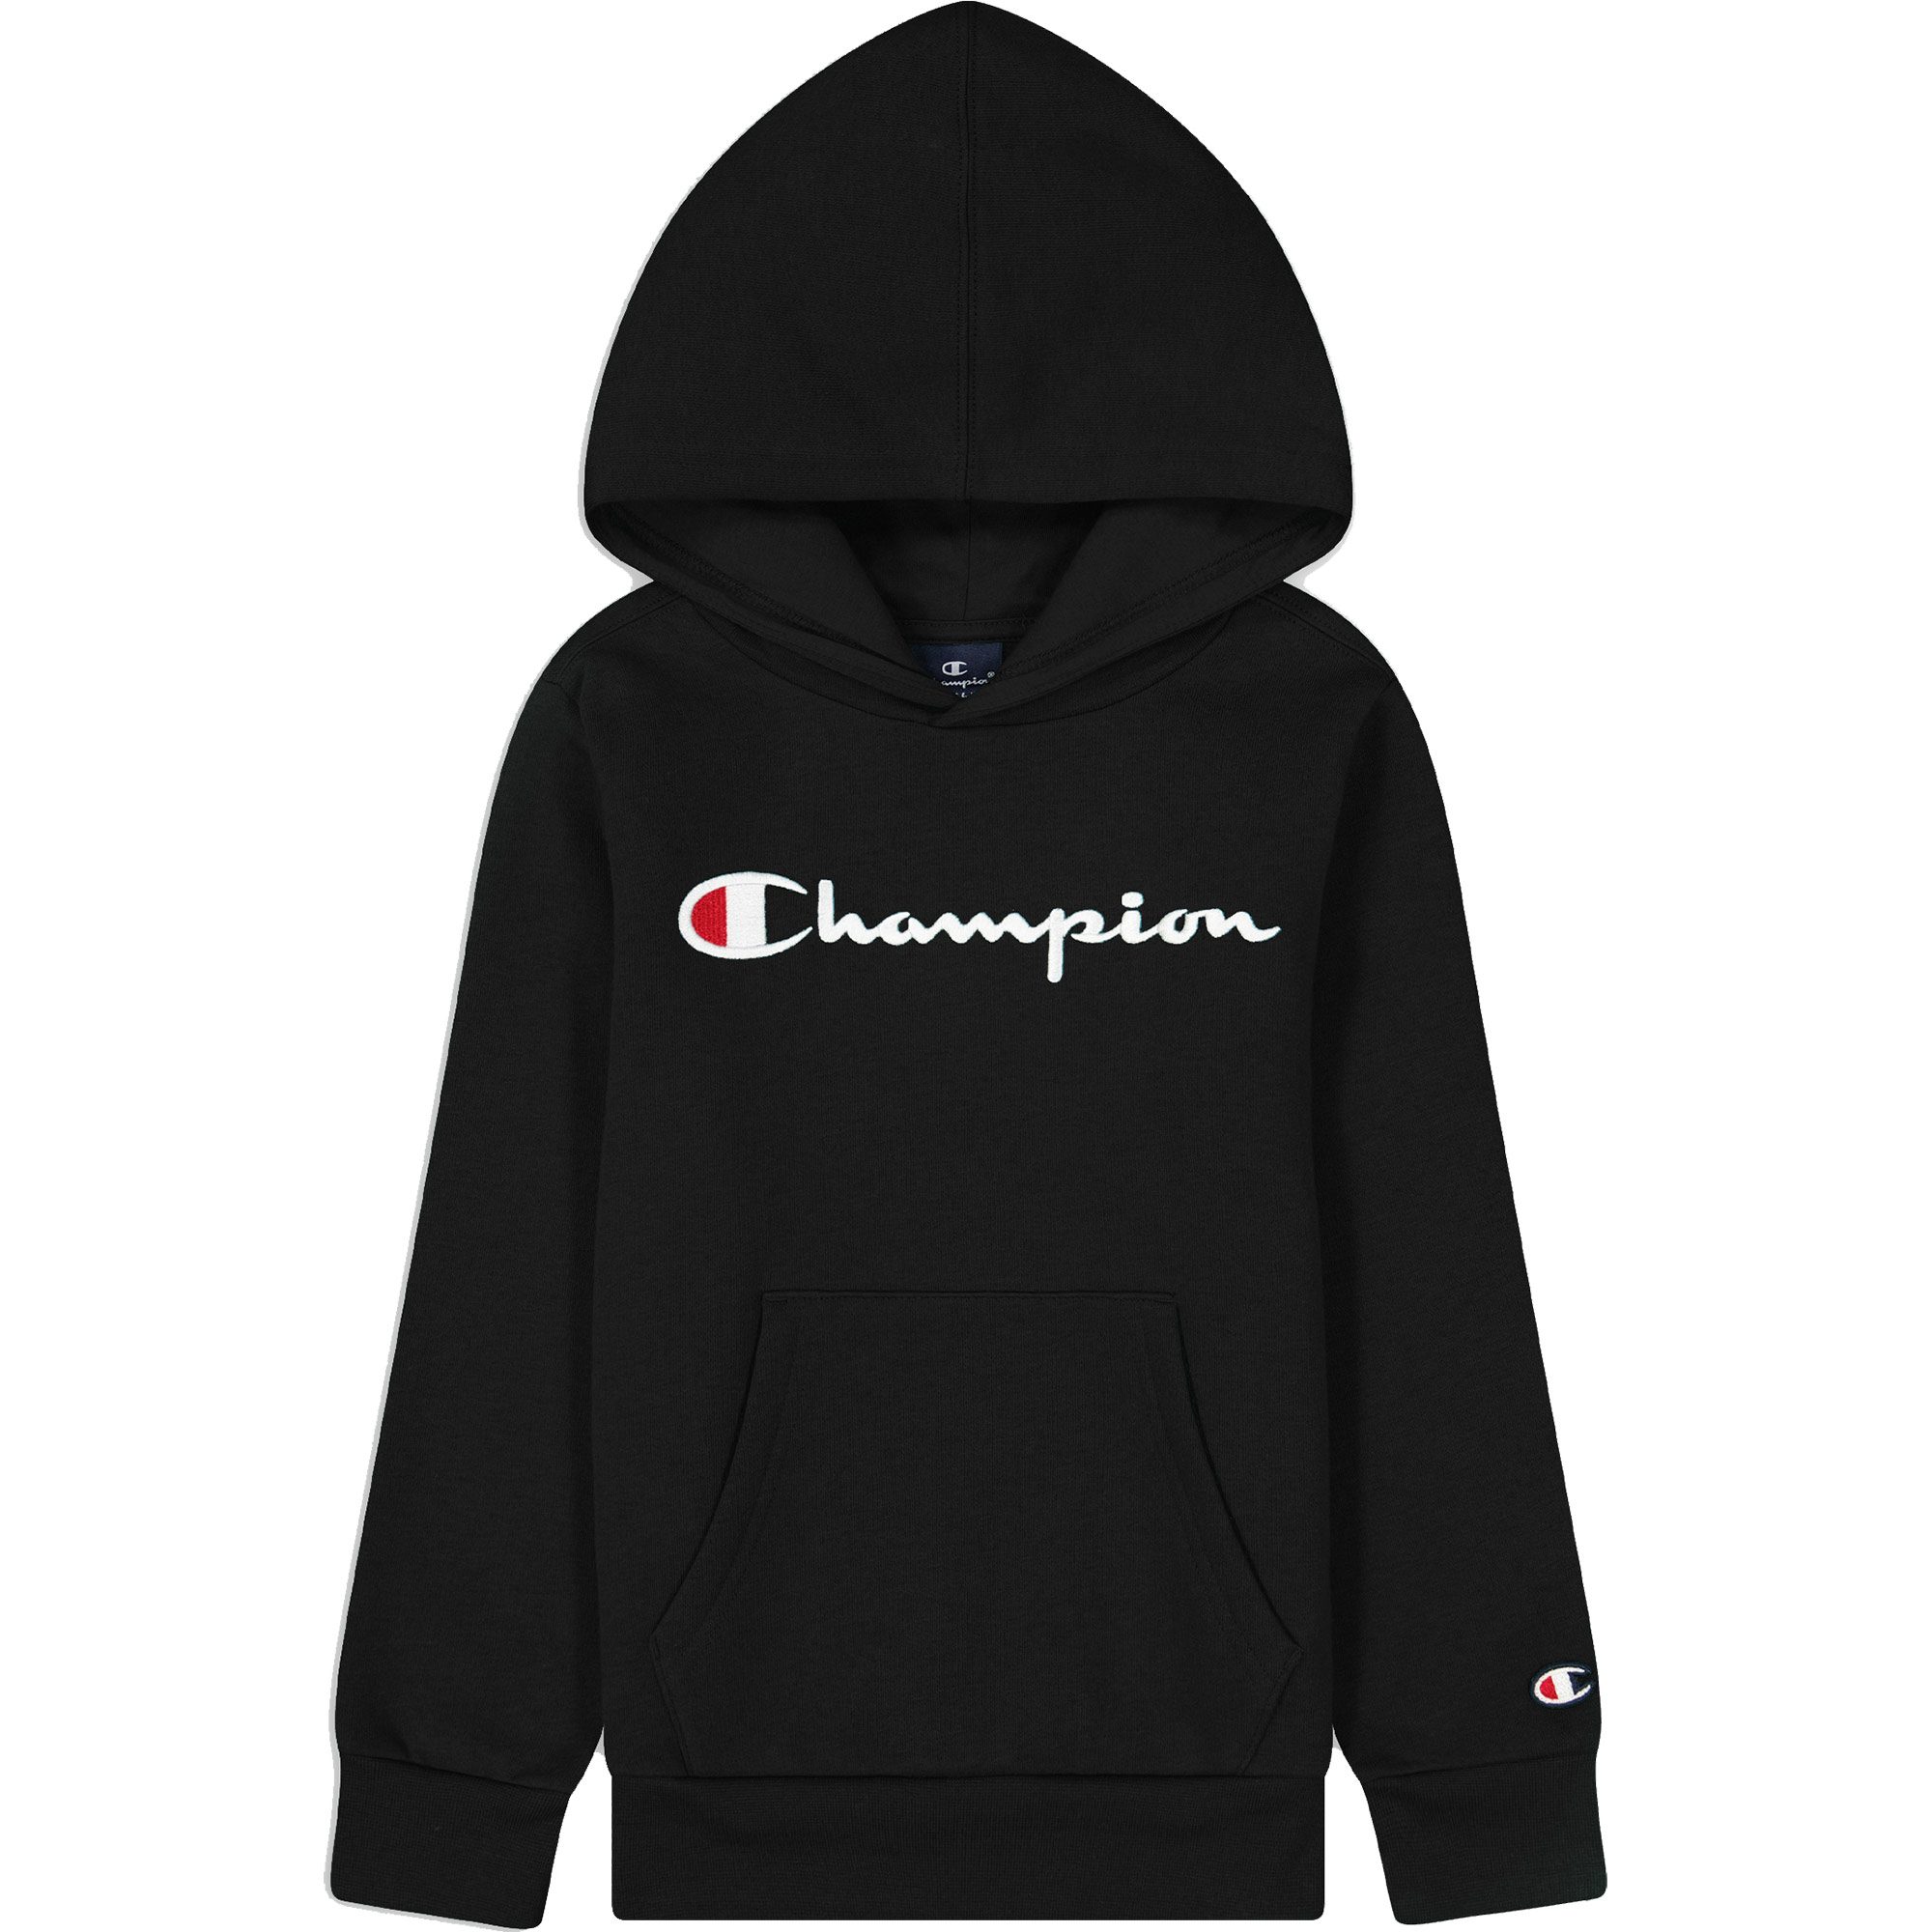 Bittl beauty Jungen - Champion Hooded Sport black Sweatshirt kaufen Shop im